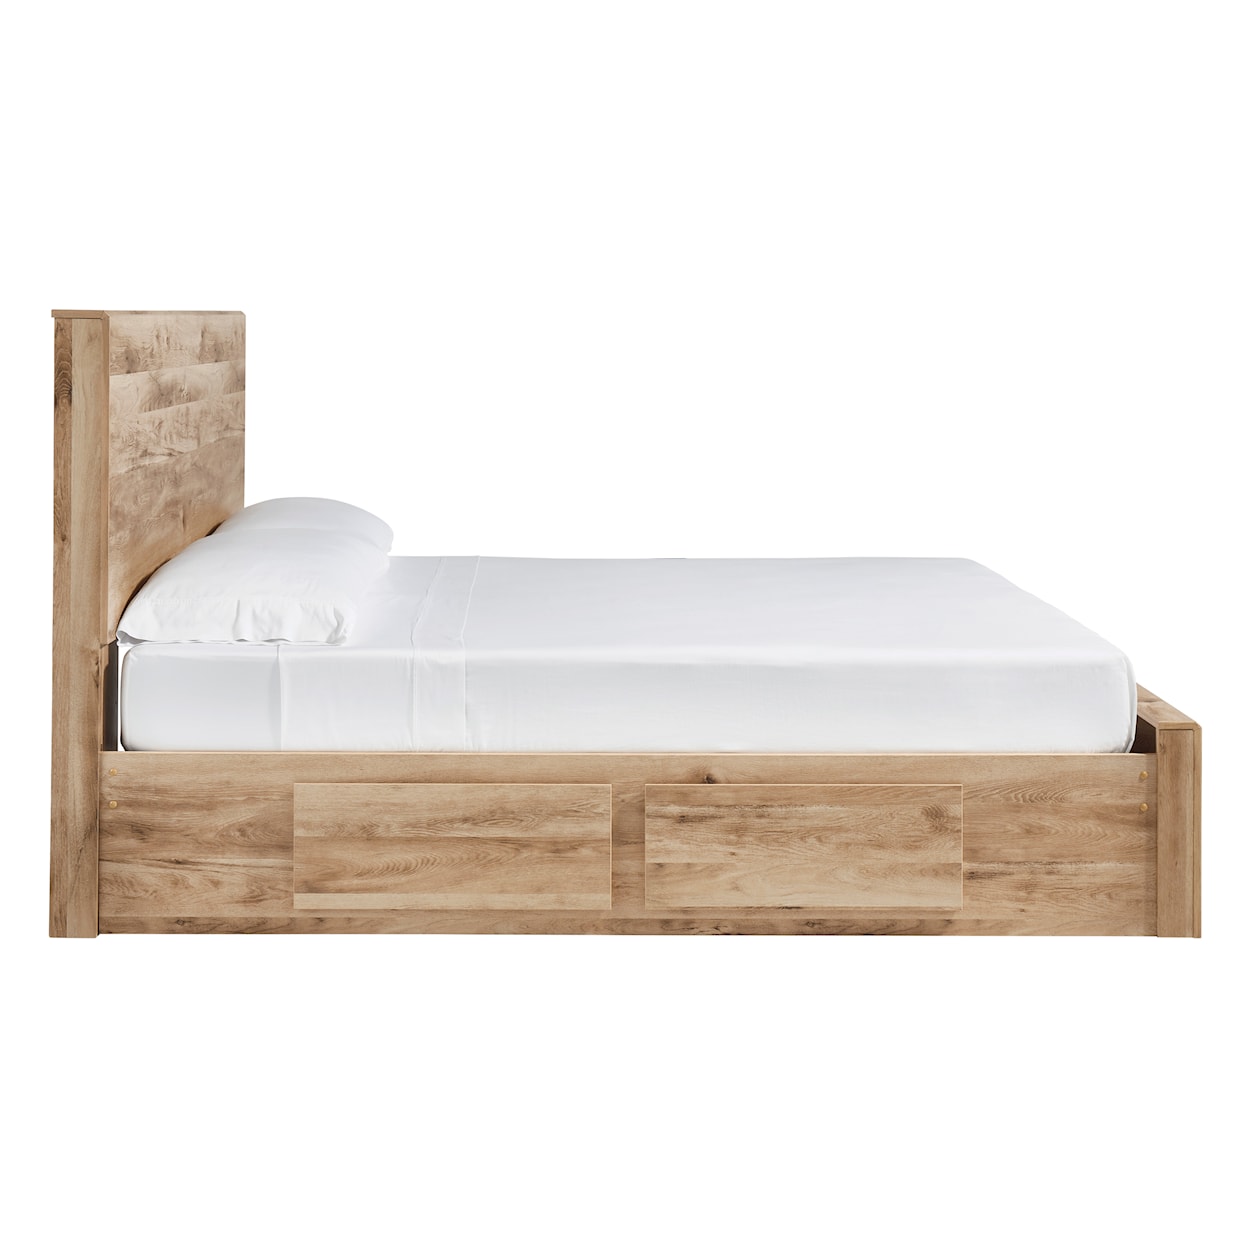 Benchcraft Hyanna Queen Storage Bed w/ 6 Drawers